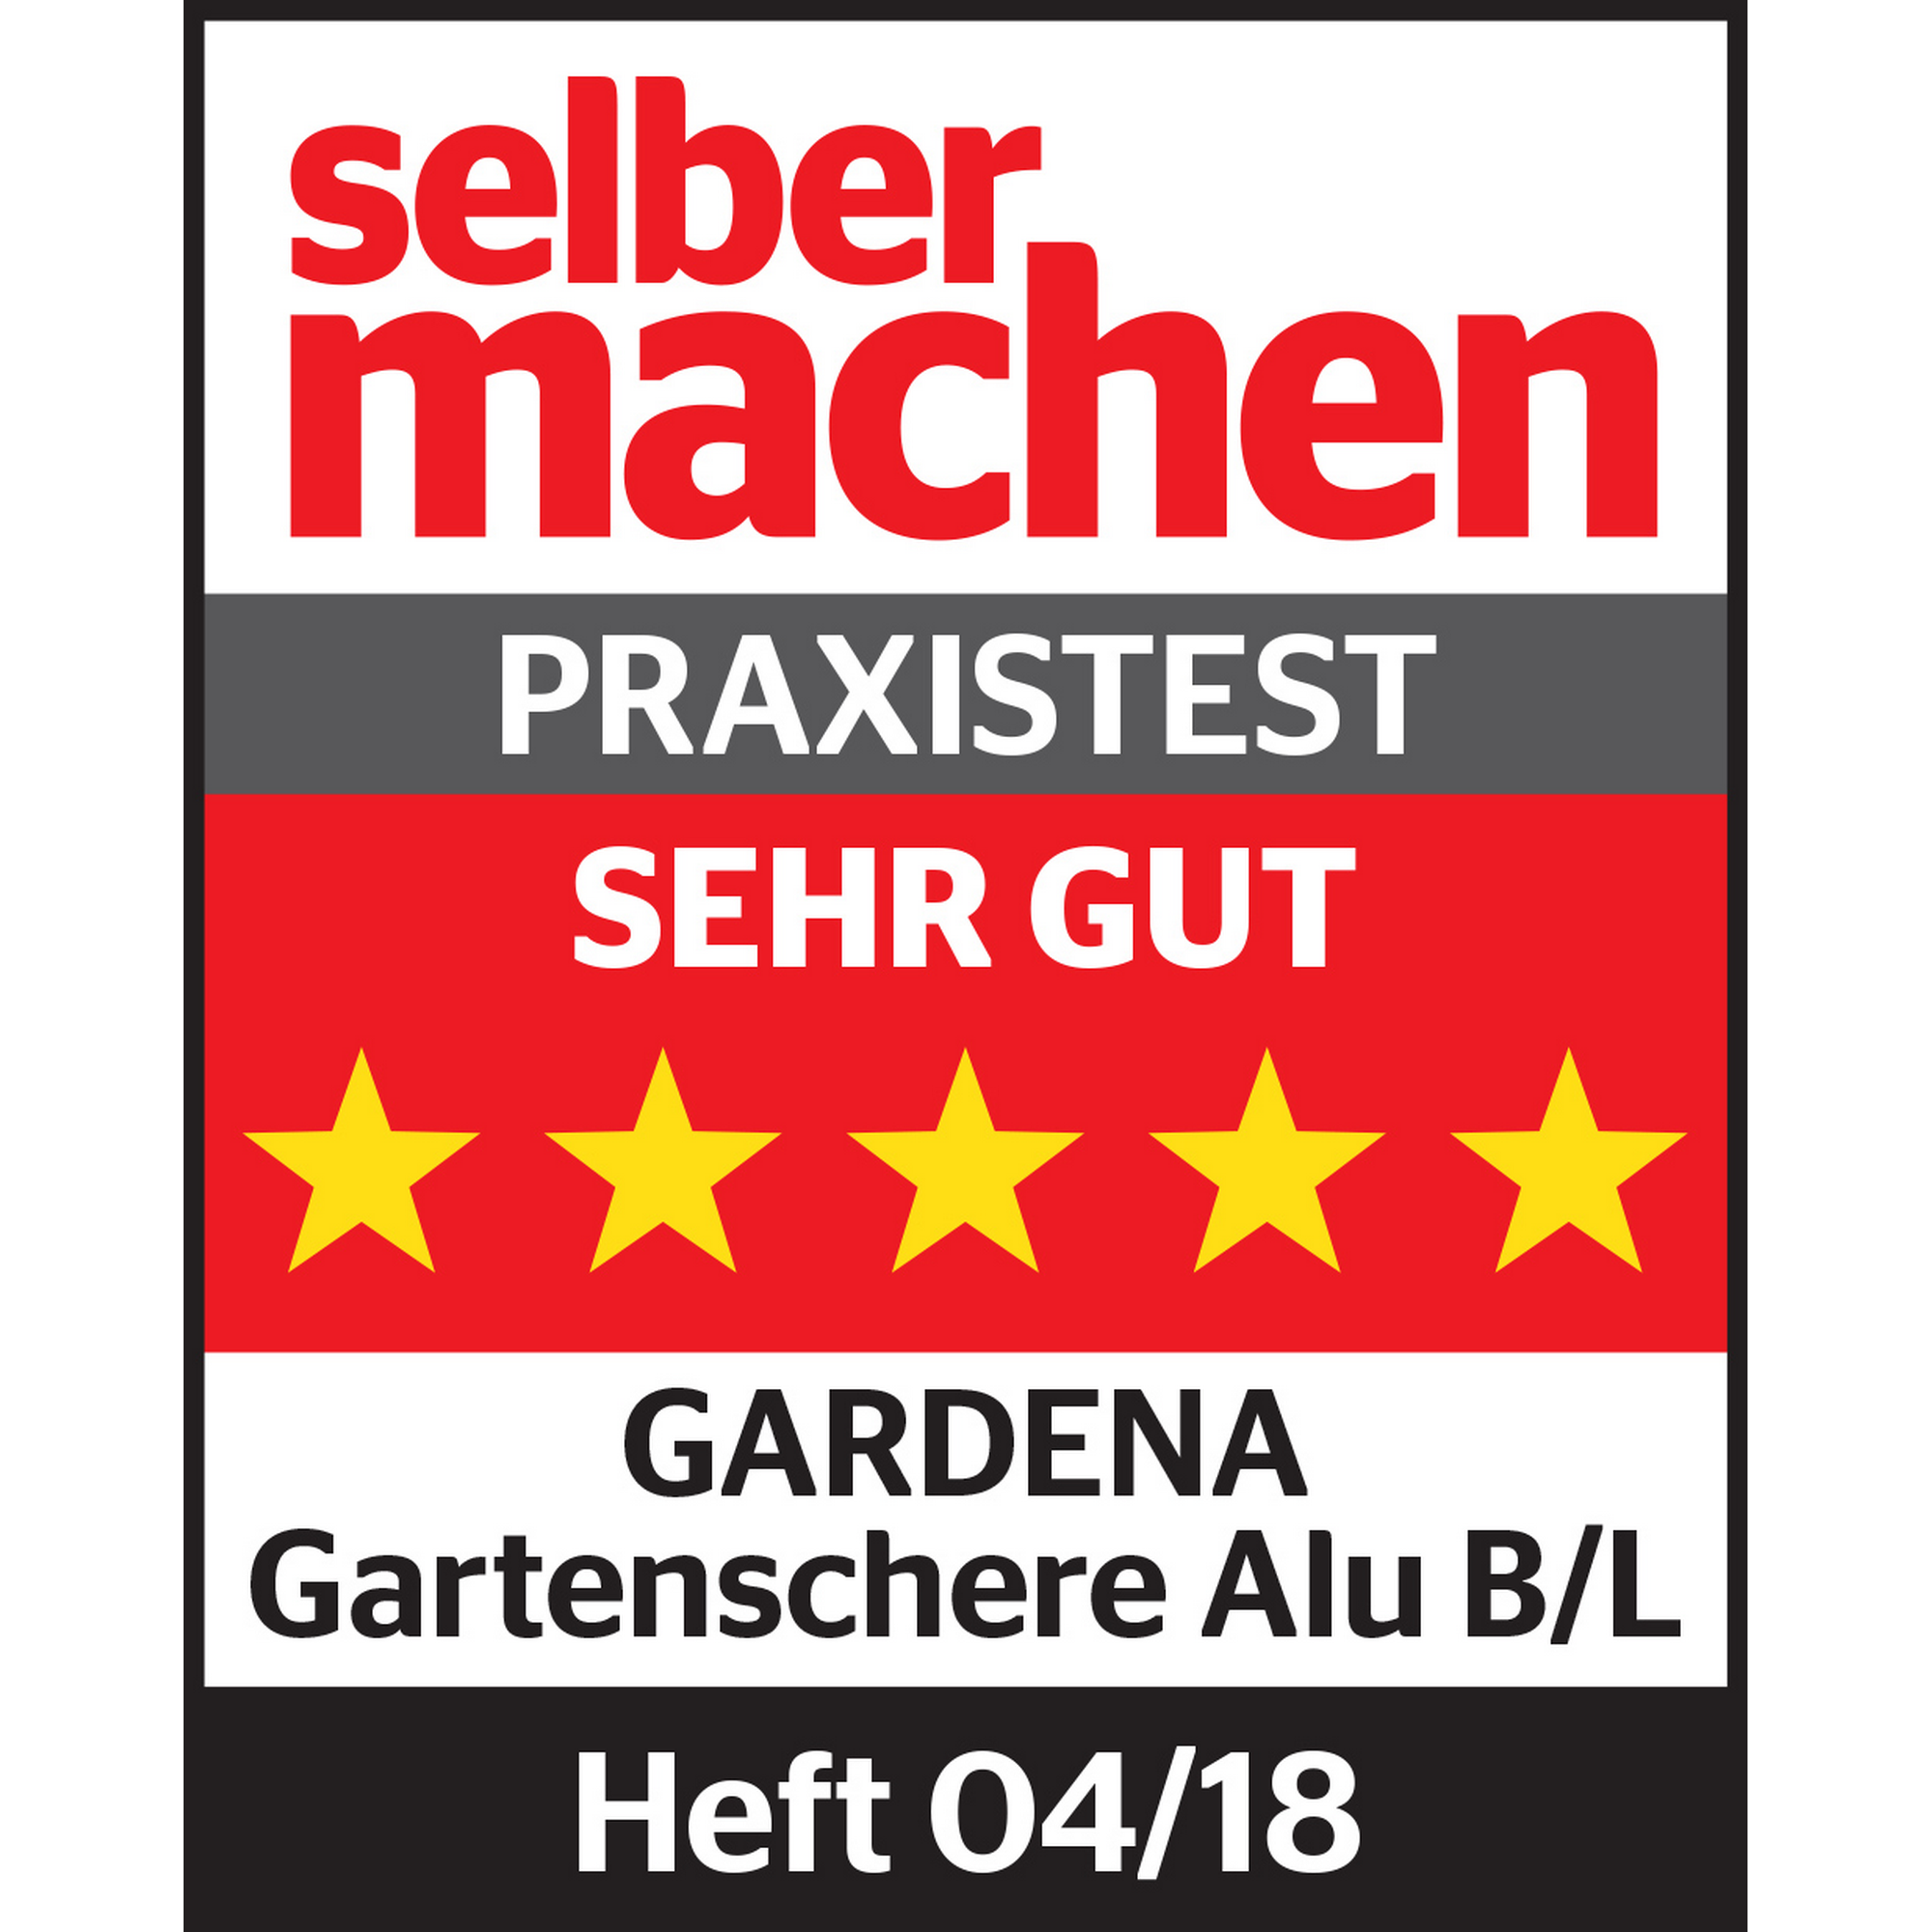 Alu-Gartenschere B/L + product picture